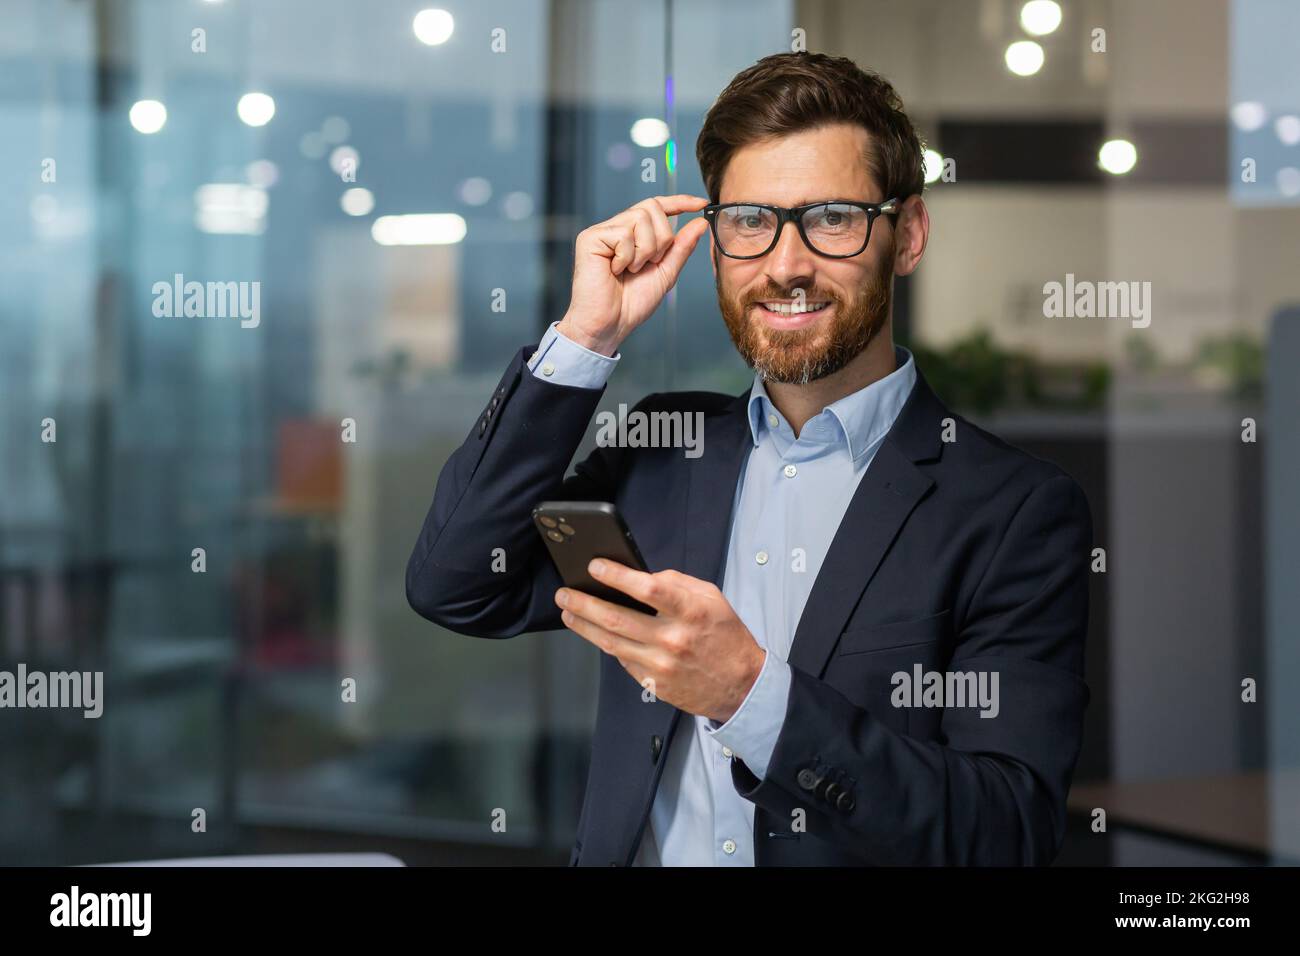 Retrato exitoso jefe con un teléfono, un hombre con gafas y un traje de negocios está mirando la cámara, un inversor está sosteniendo un smartphone en las manos, leyendo un mensaje y utilizando una aplicación en línea. Foto de stock